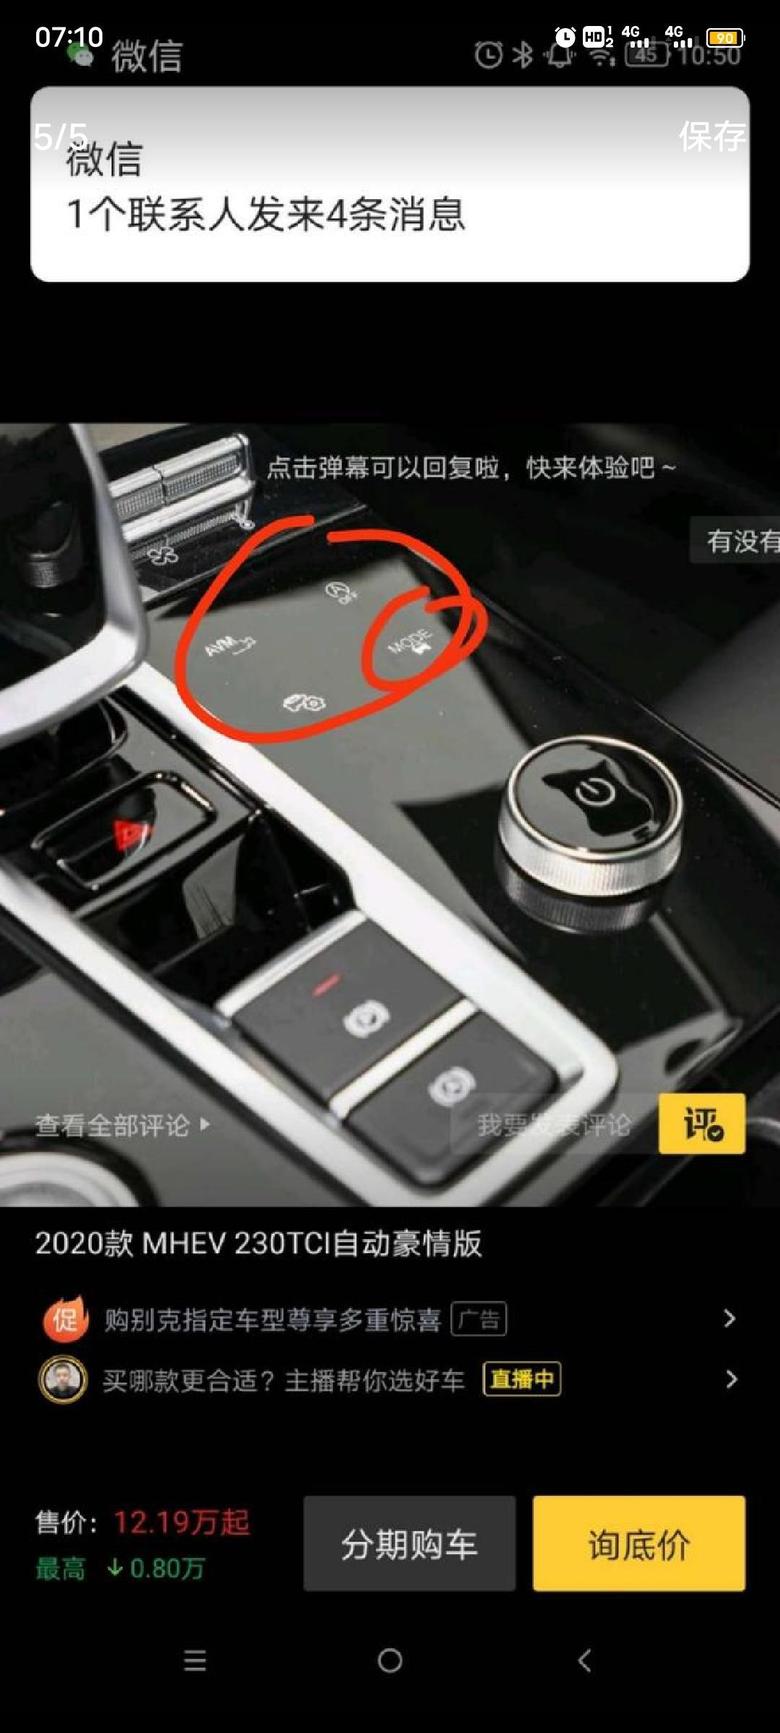 瑞虎8 plus 引用了一位车友的图片问下各位车友这四个按键的功能与用途谢谢